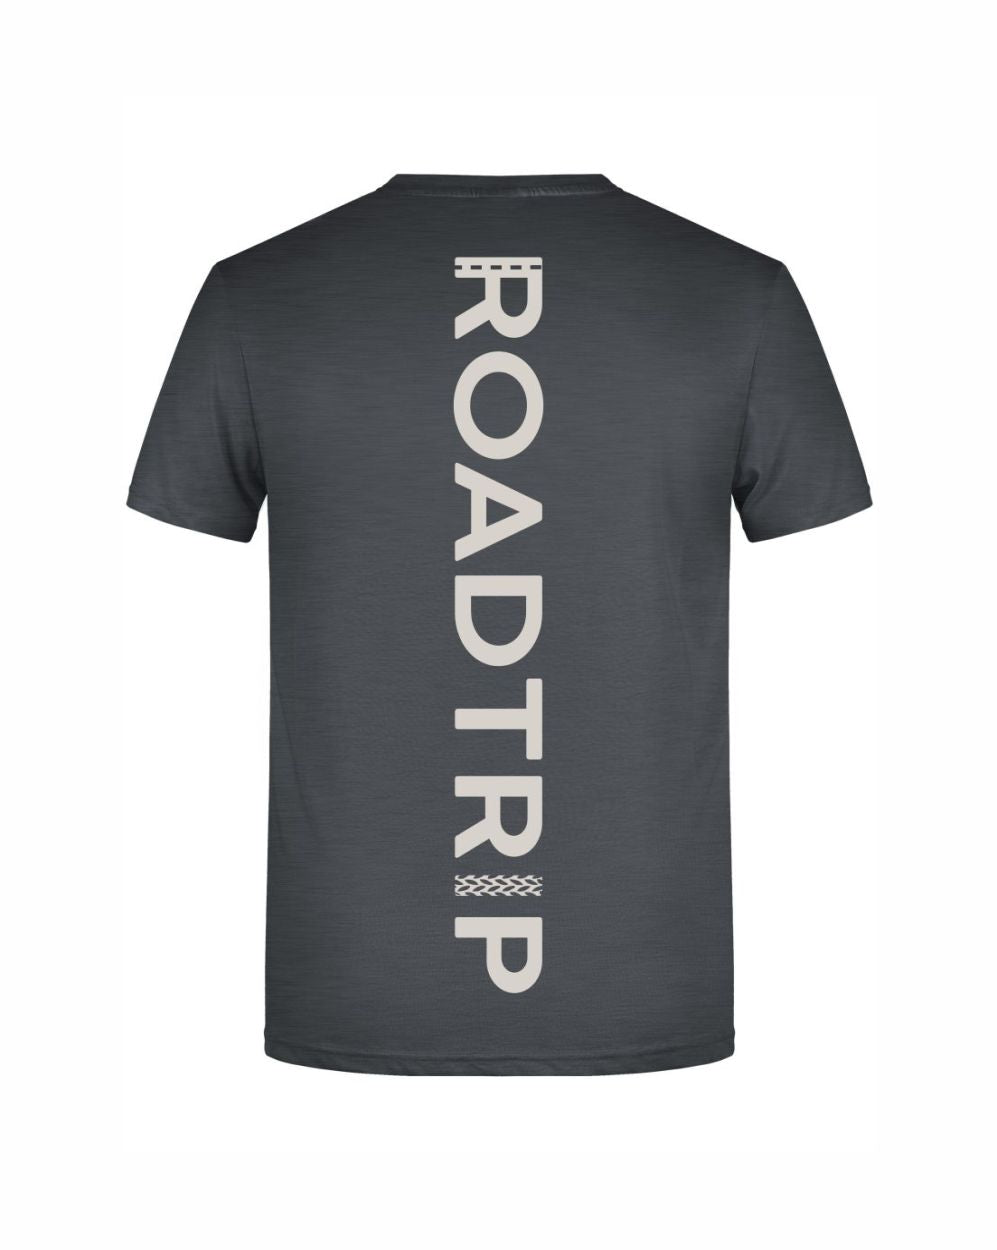 Roadtrip T-Shirt